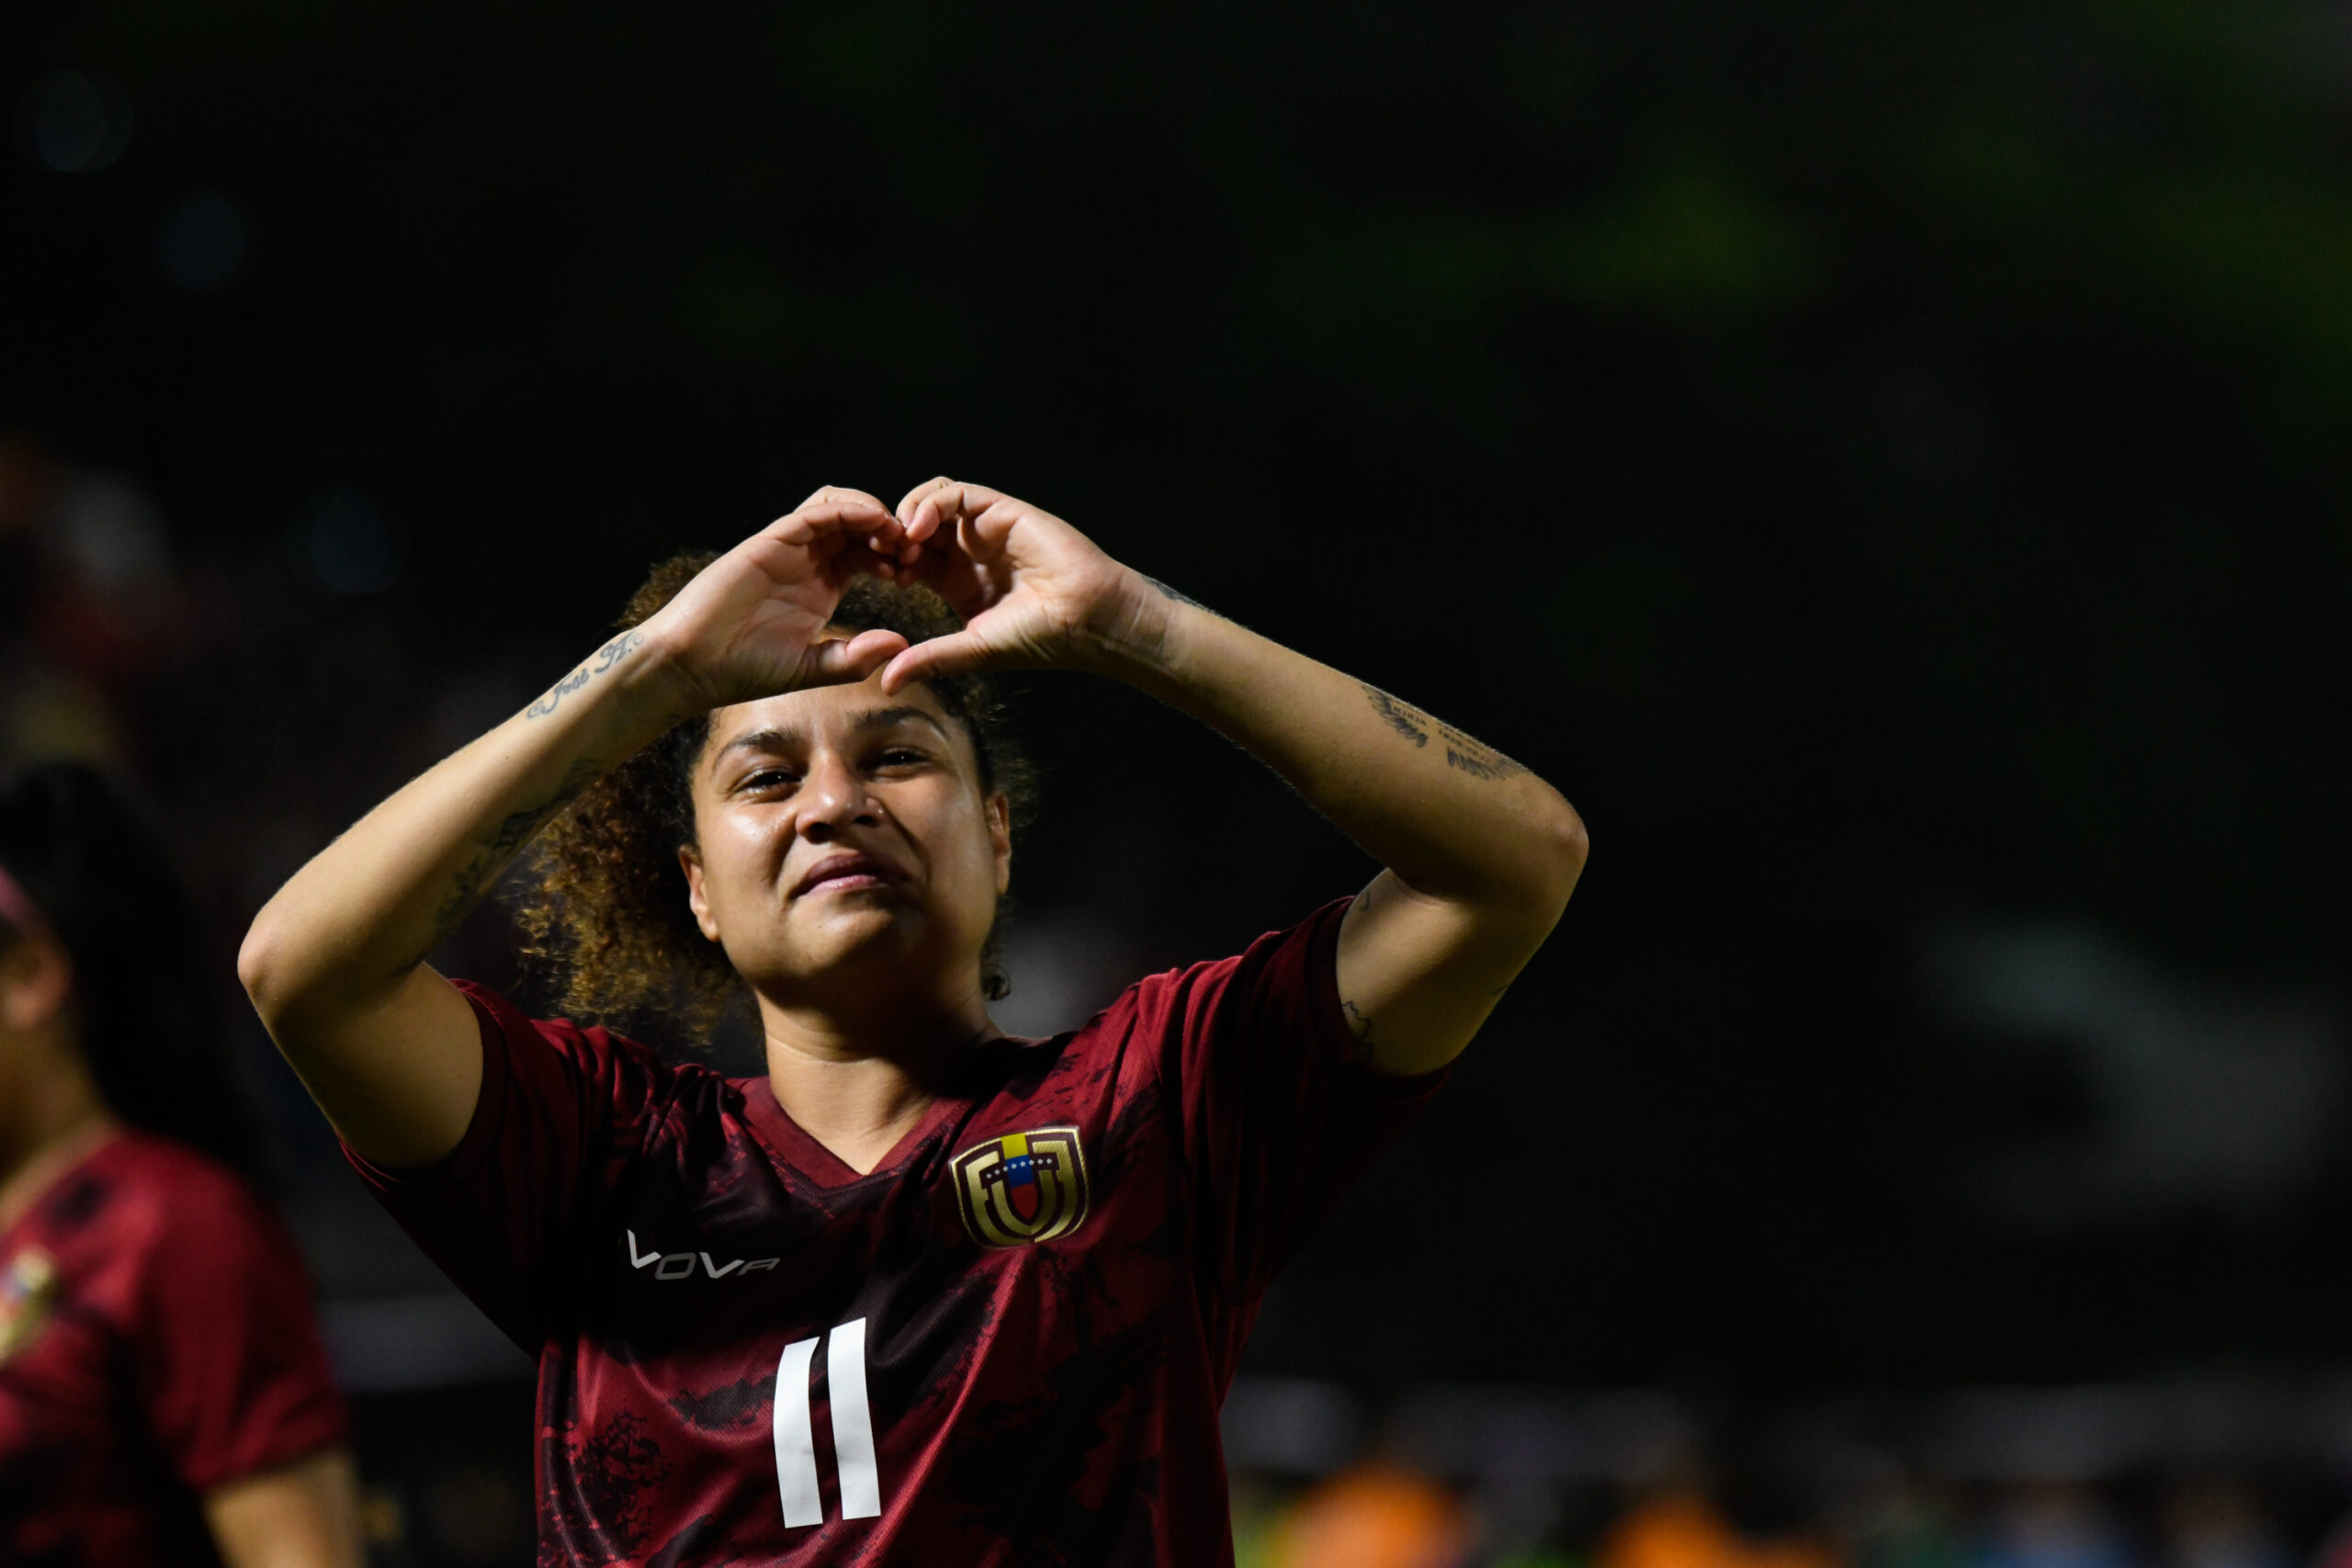 Venezuela vs Uruguay femenino amistoso, resultado: la Vinotinto Femenina  venció por 1 a 0 a las charrúas con gol de Gabriela García, Deportes